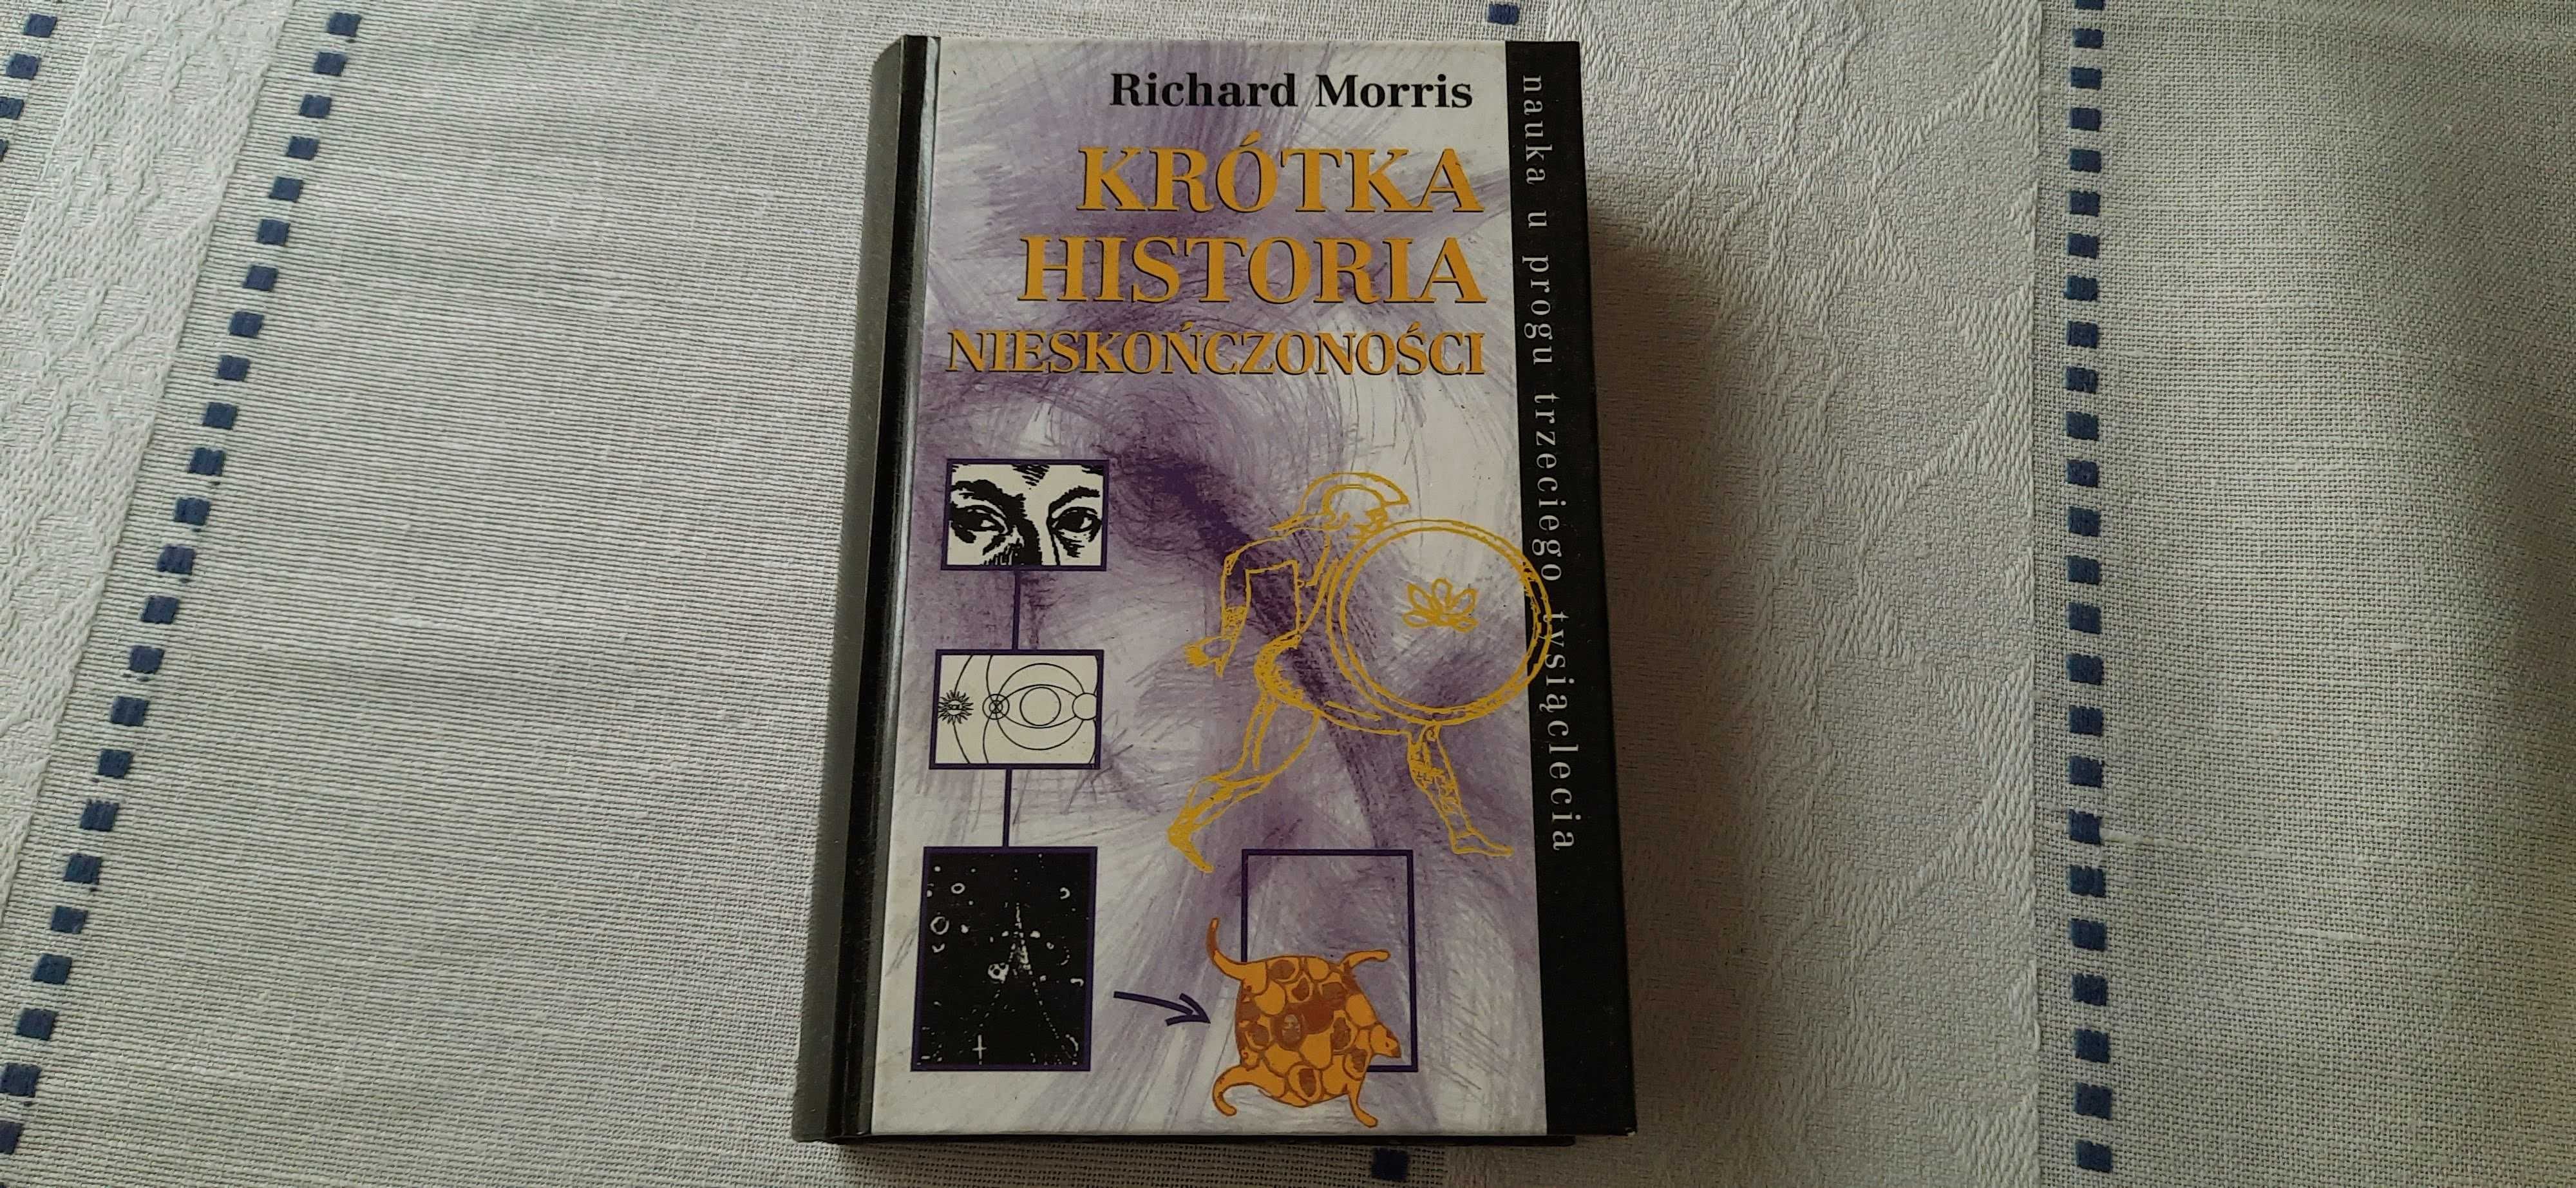 Richard Morris - Krótka historia nieskończoności